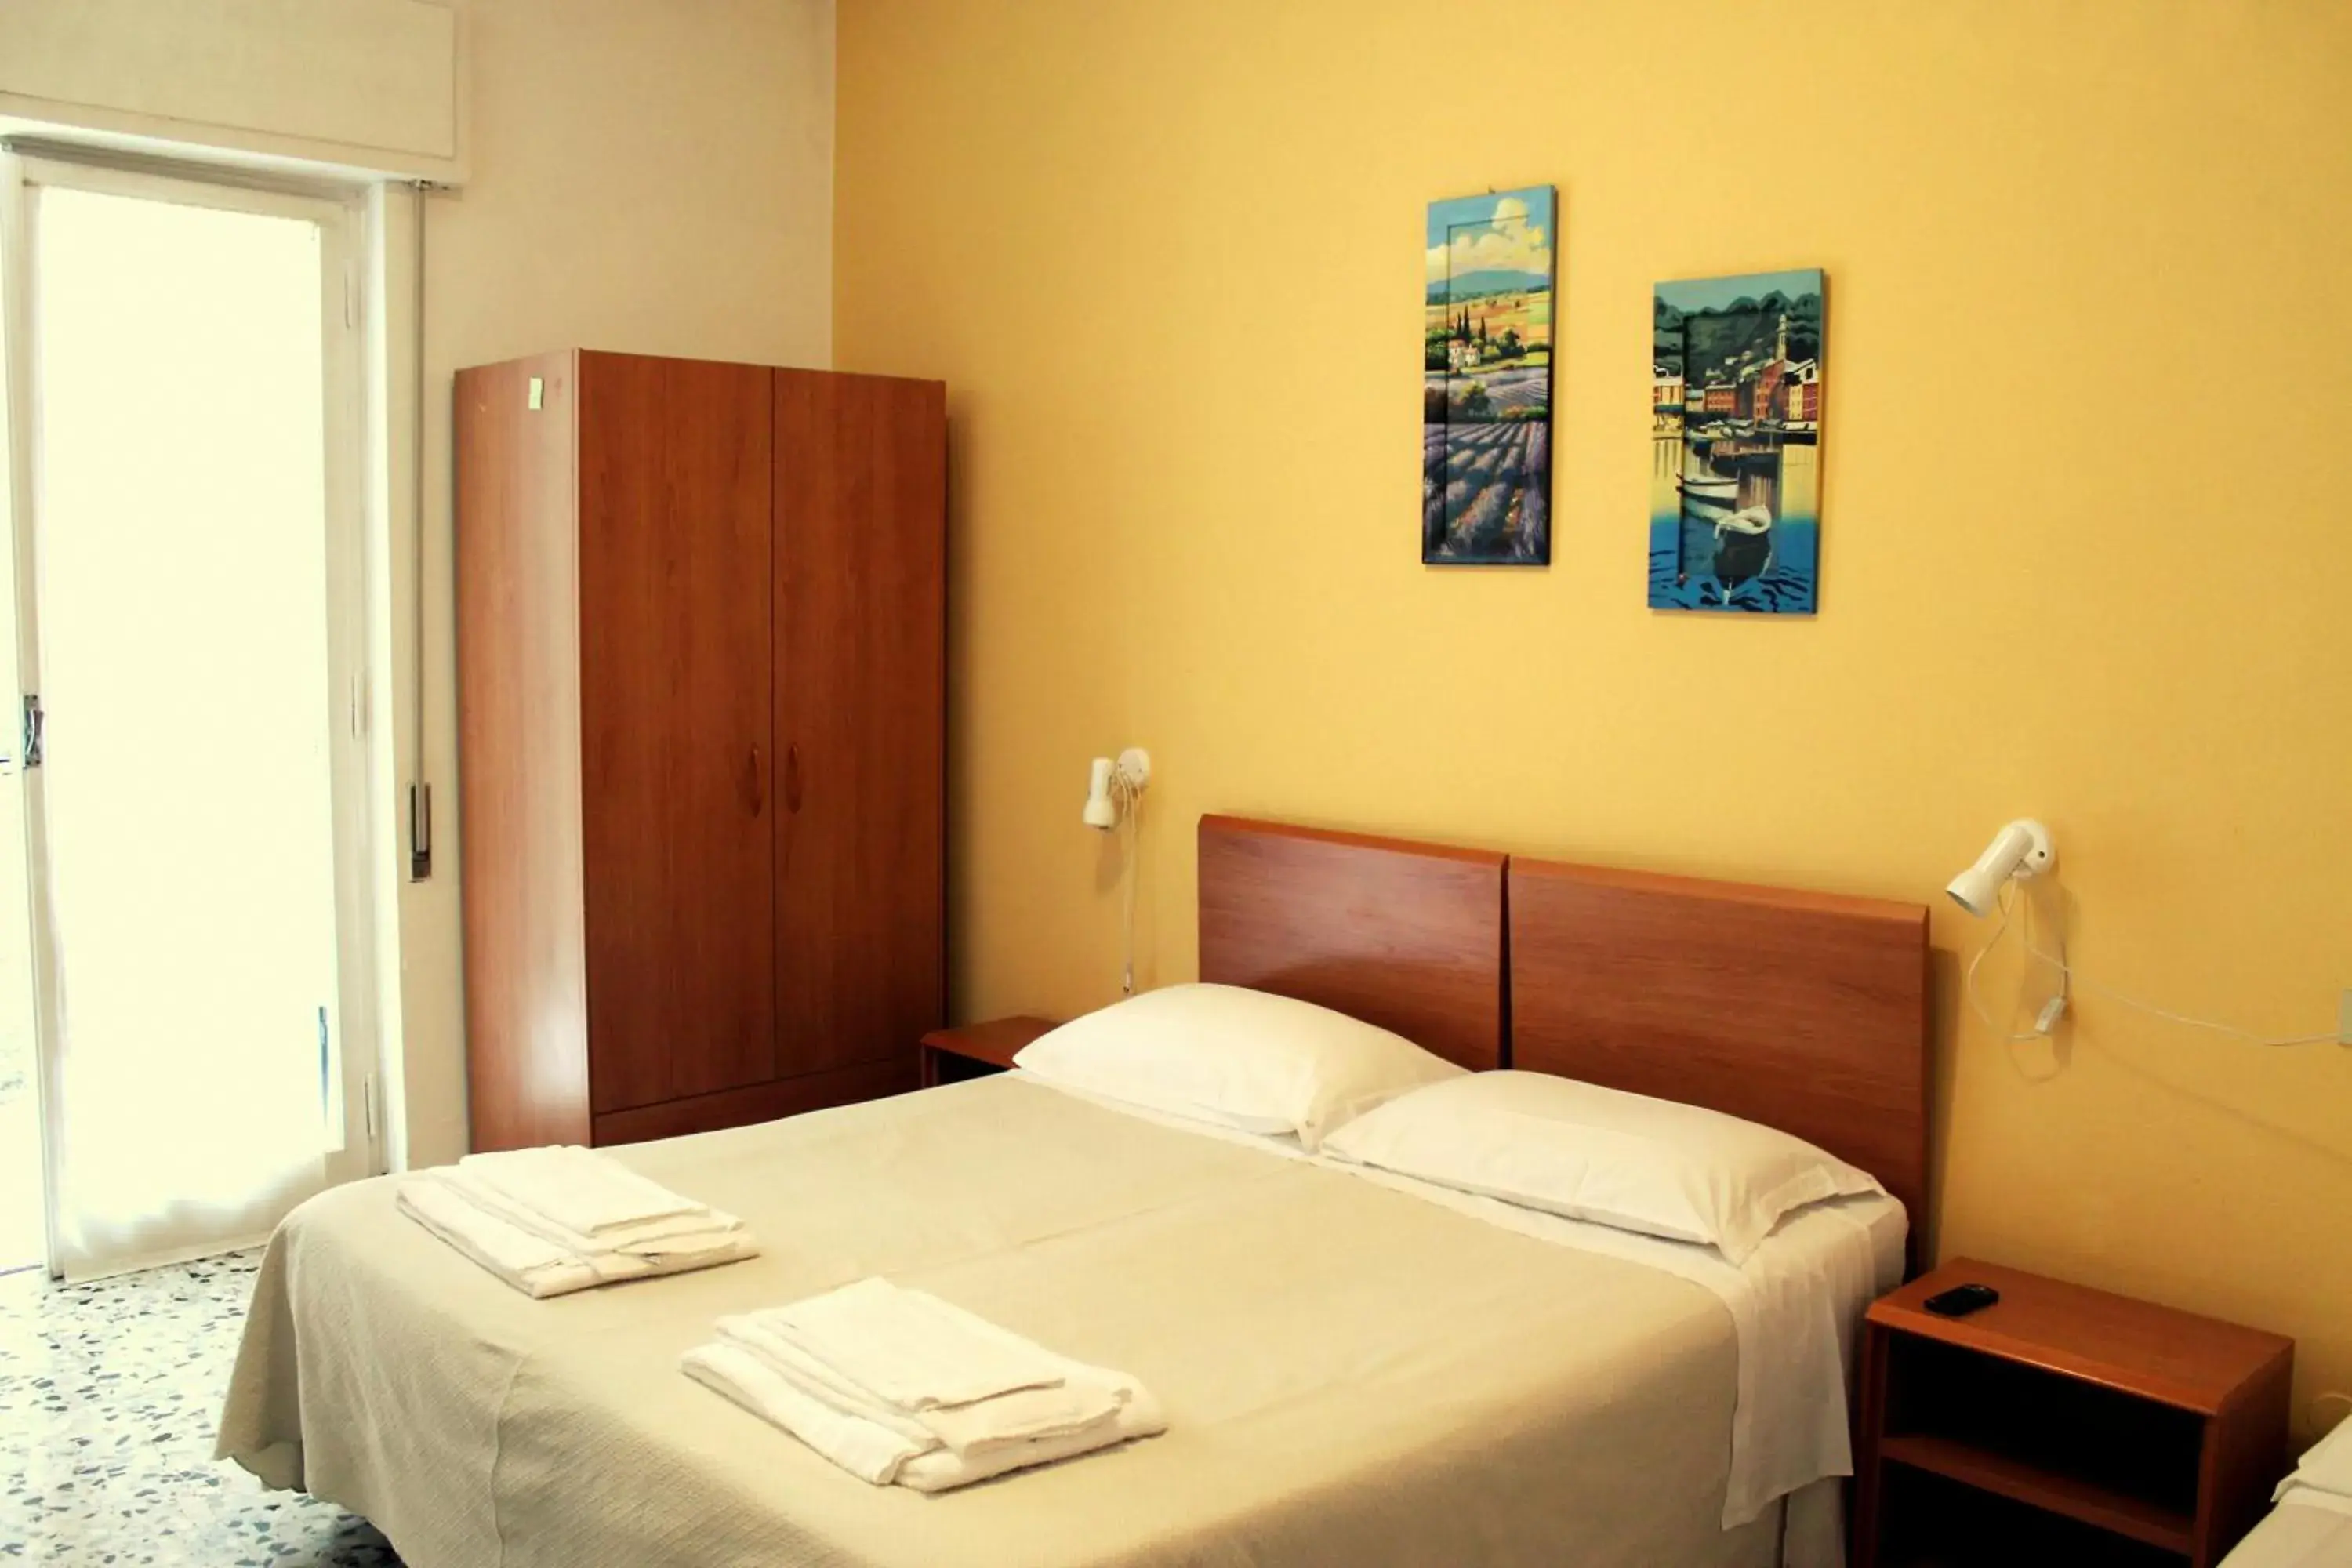 Day, Room Photo in Albergo Nella